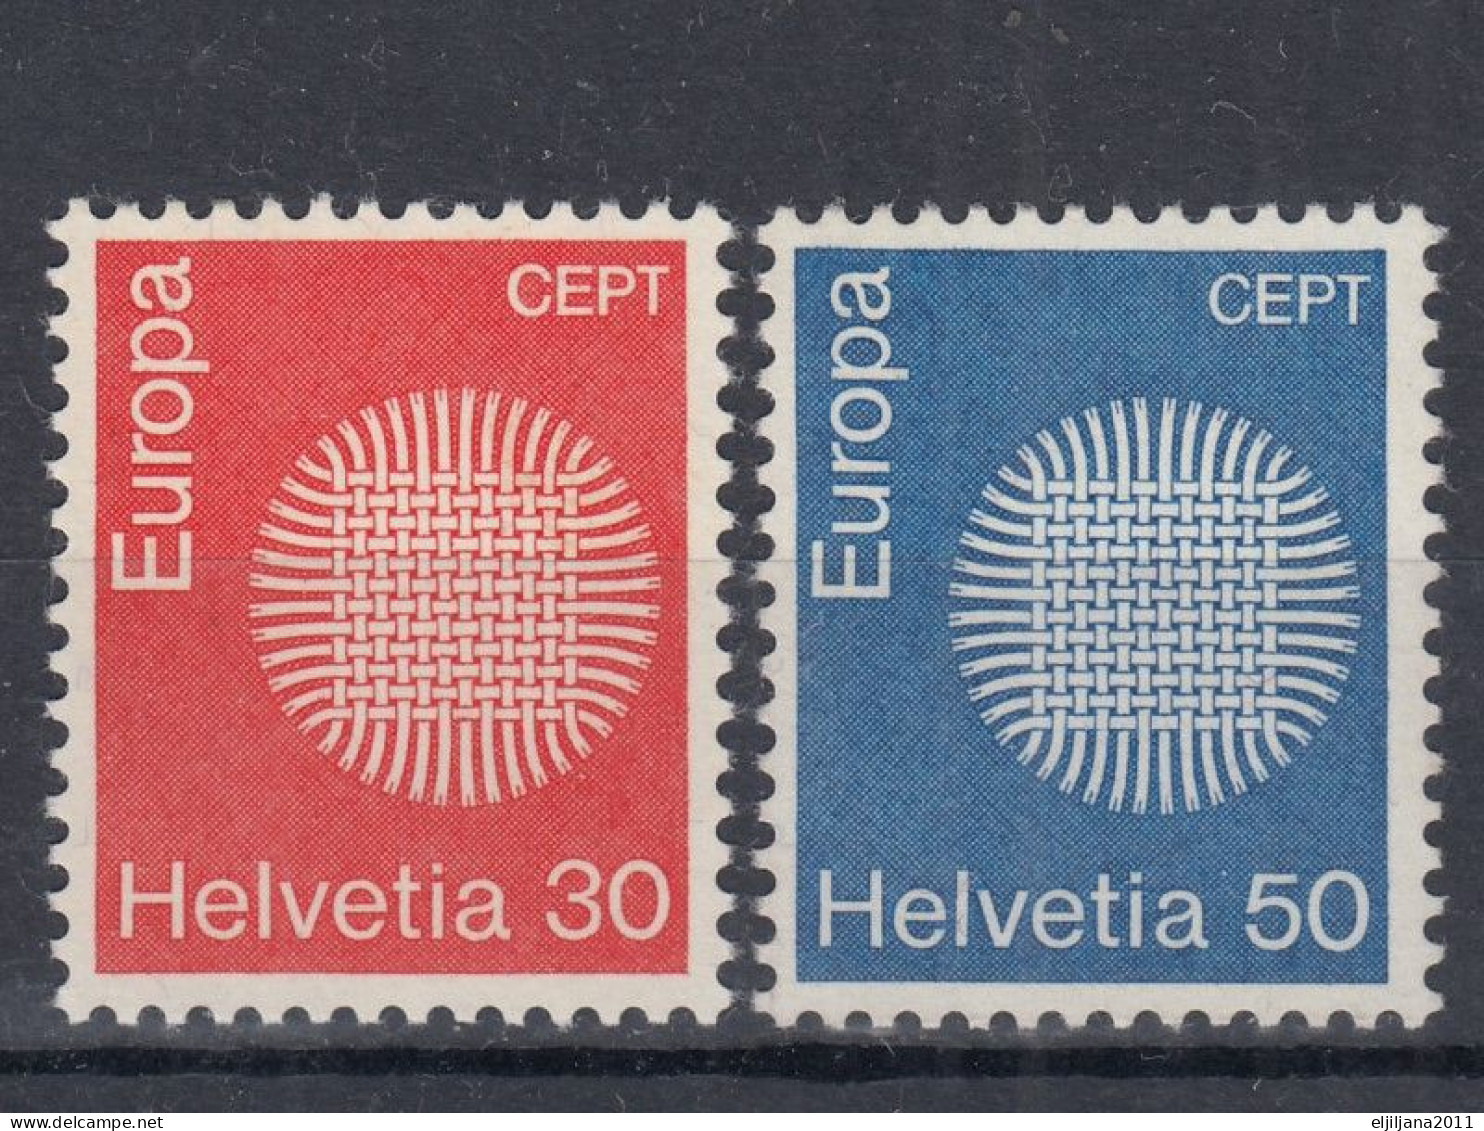 Switzerland / Helvetia / Schweiz / Suisse 1970 ⁕ Europa Cept Mi.923-924 ⁕ 2v MNH - Ungebraucht